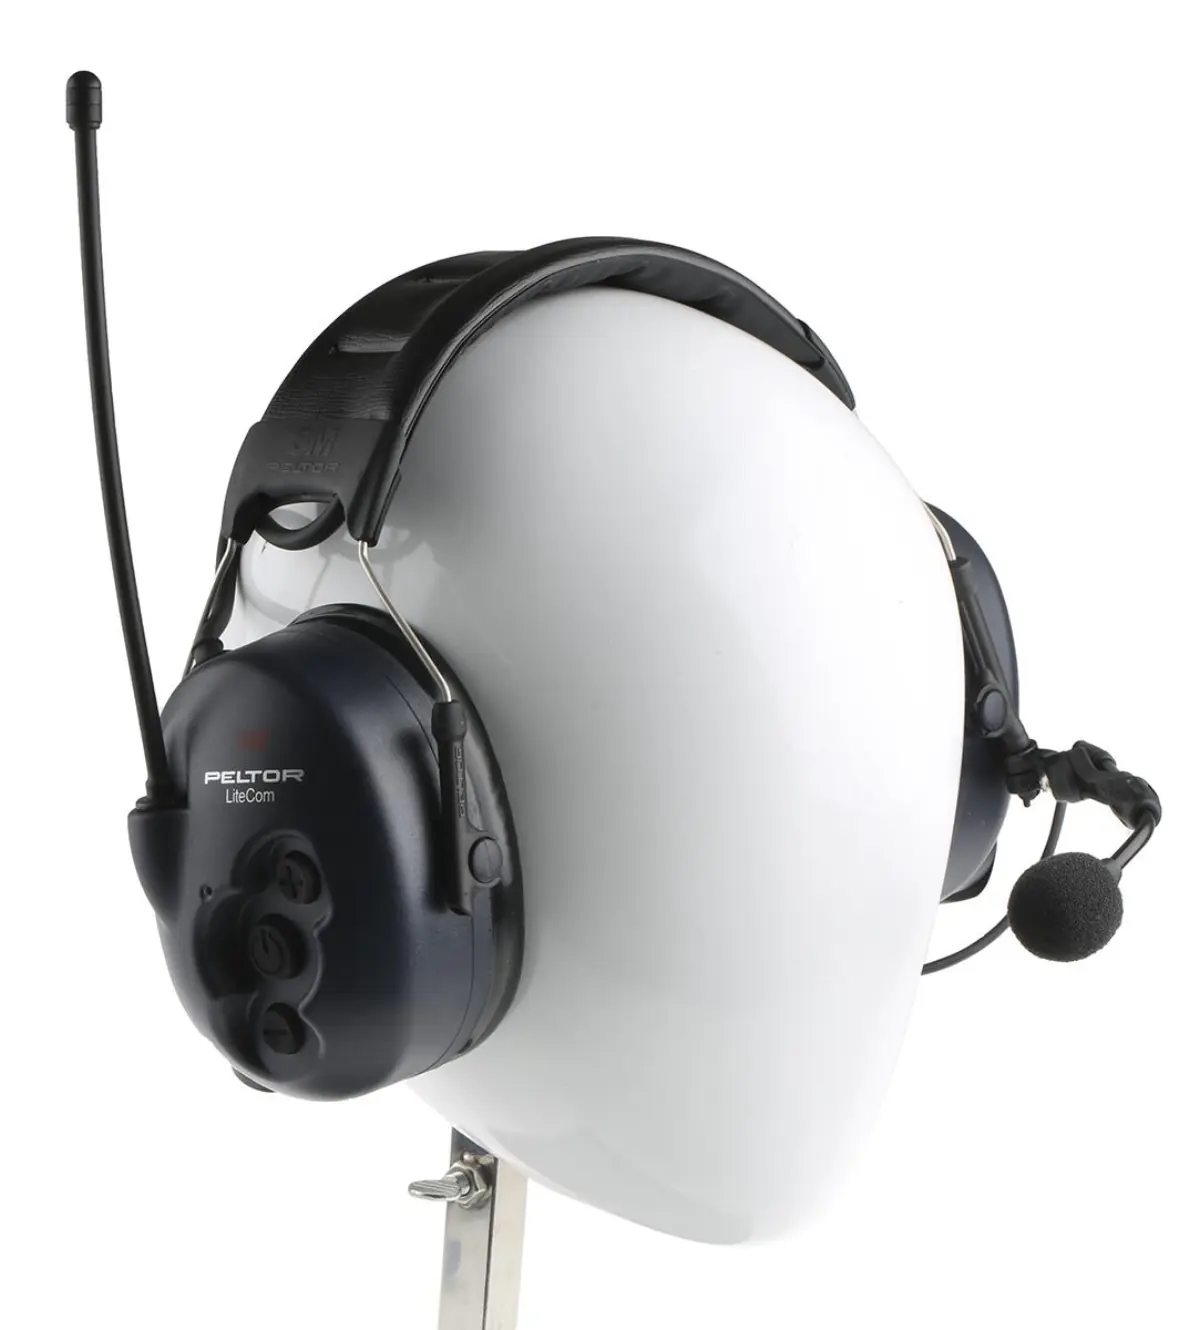 Pack de 2 Peltor LiteCom - radio avec casque antibruit - MT53H7A4400-EU